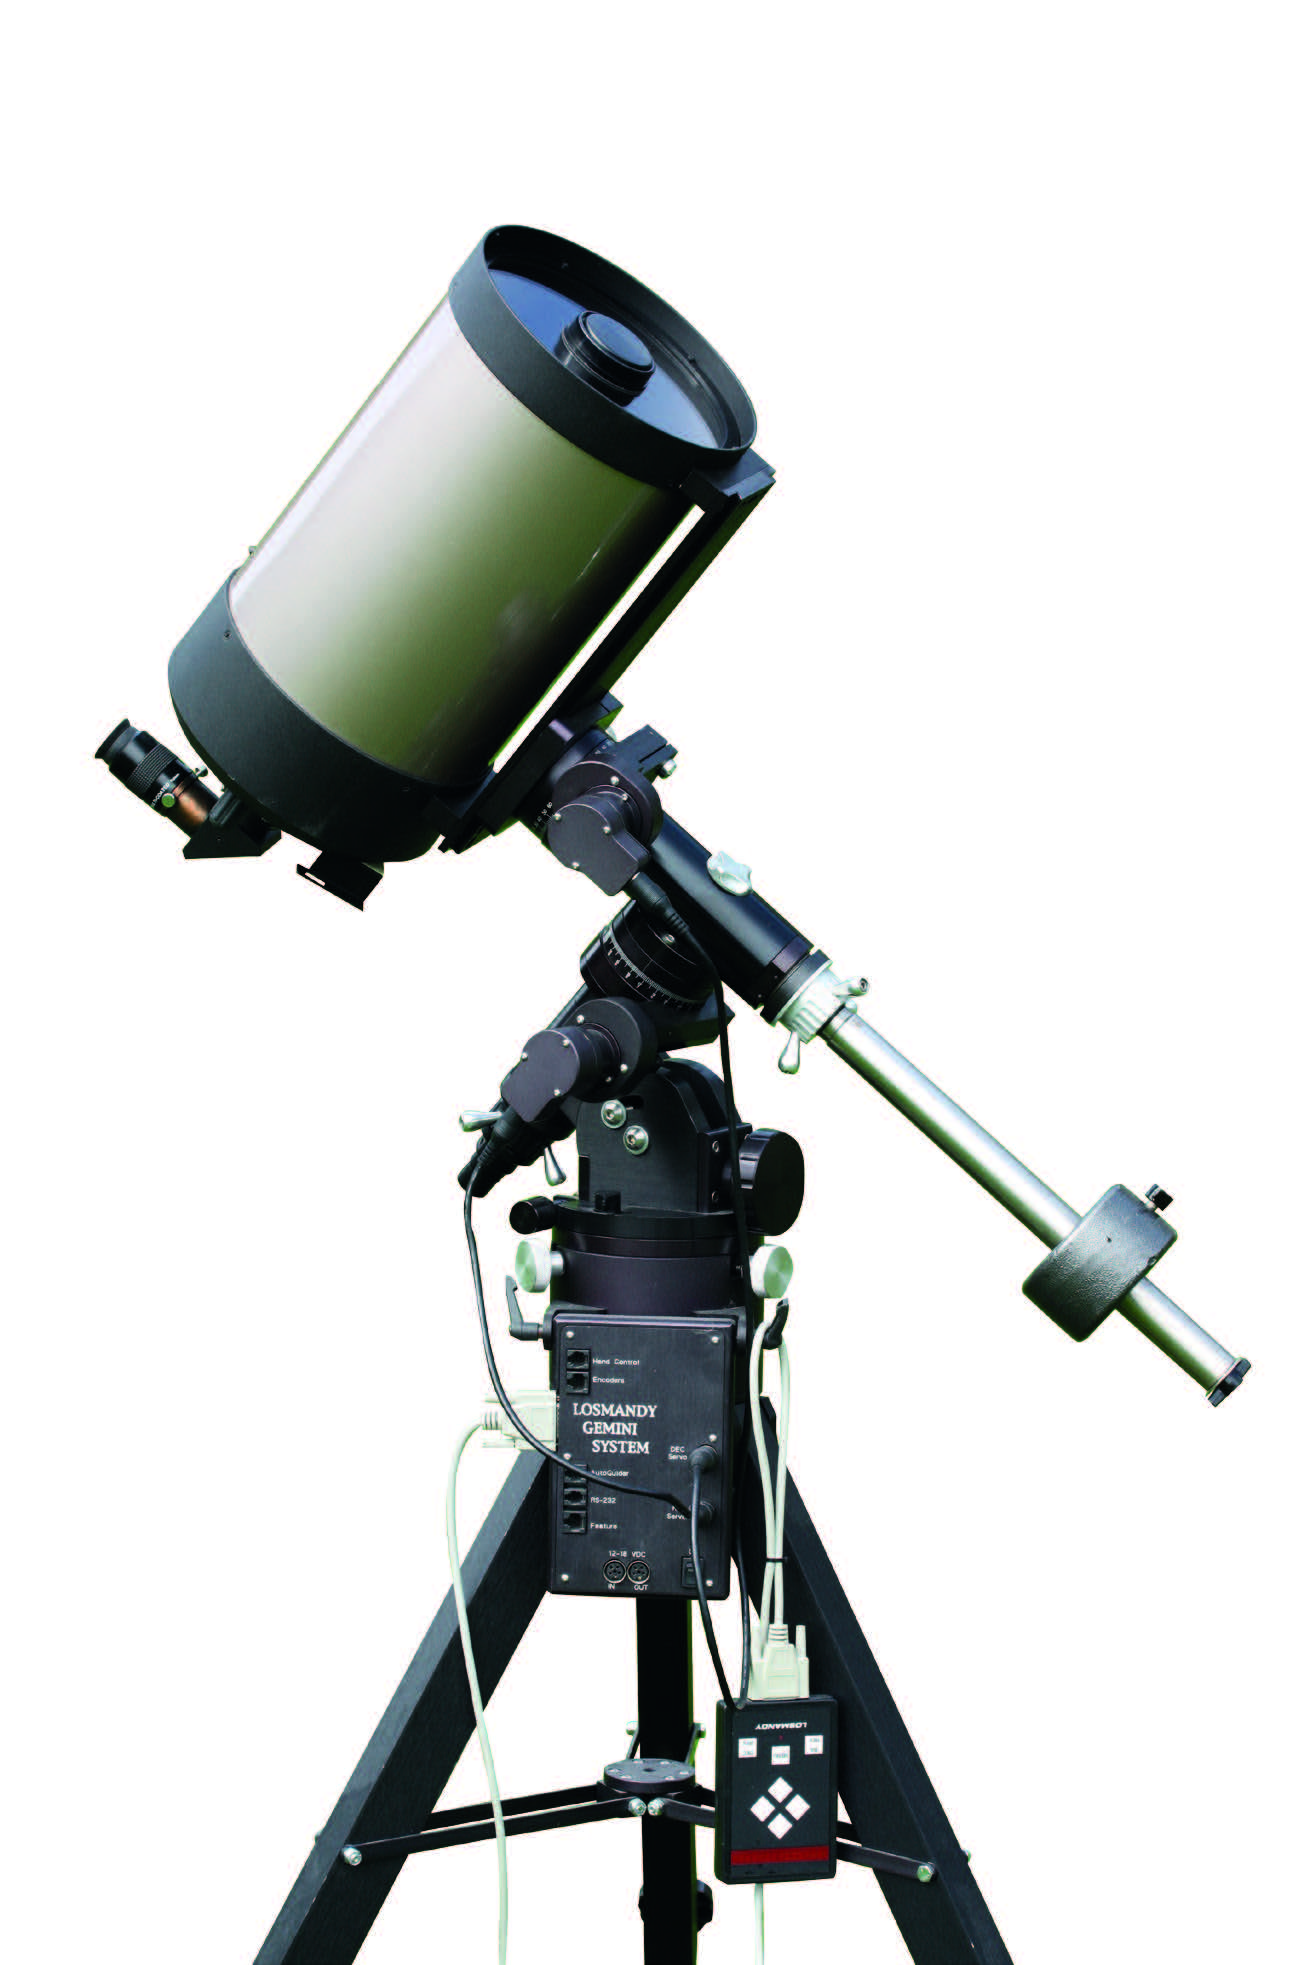 Pour observer la Lune et les planètes, on utilise ici un télescope Schmidt-Cassegrain placé sur une monture allemande de type Losmandy GM-8. Cette monture est nettement plus massive et sa capacité de charge est ainsi plus grande que celle de la monture légère sur la photo 2. Les deux axes de cette monture sont motorisés et la monture est en outre munie d’une fonctionnalité GoTo permettant d’approcher de nombreux objets célestes avec l'assistance de de l'ordinateur.